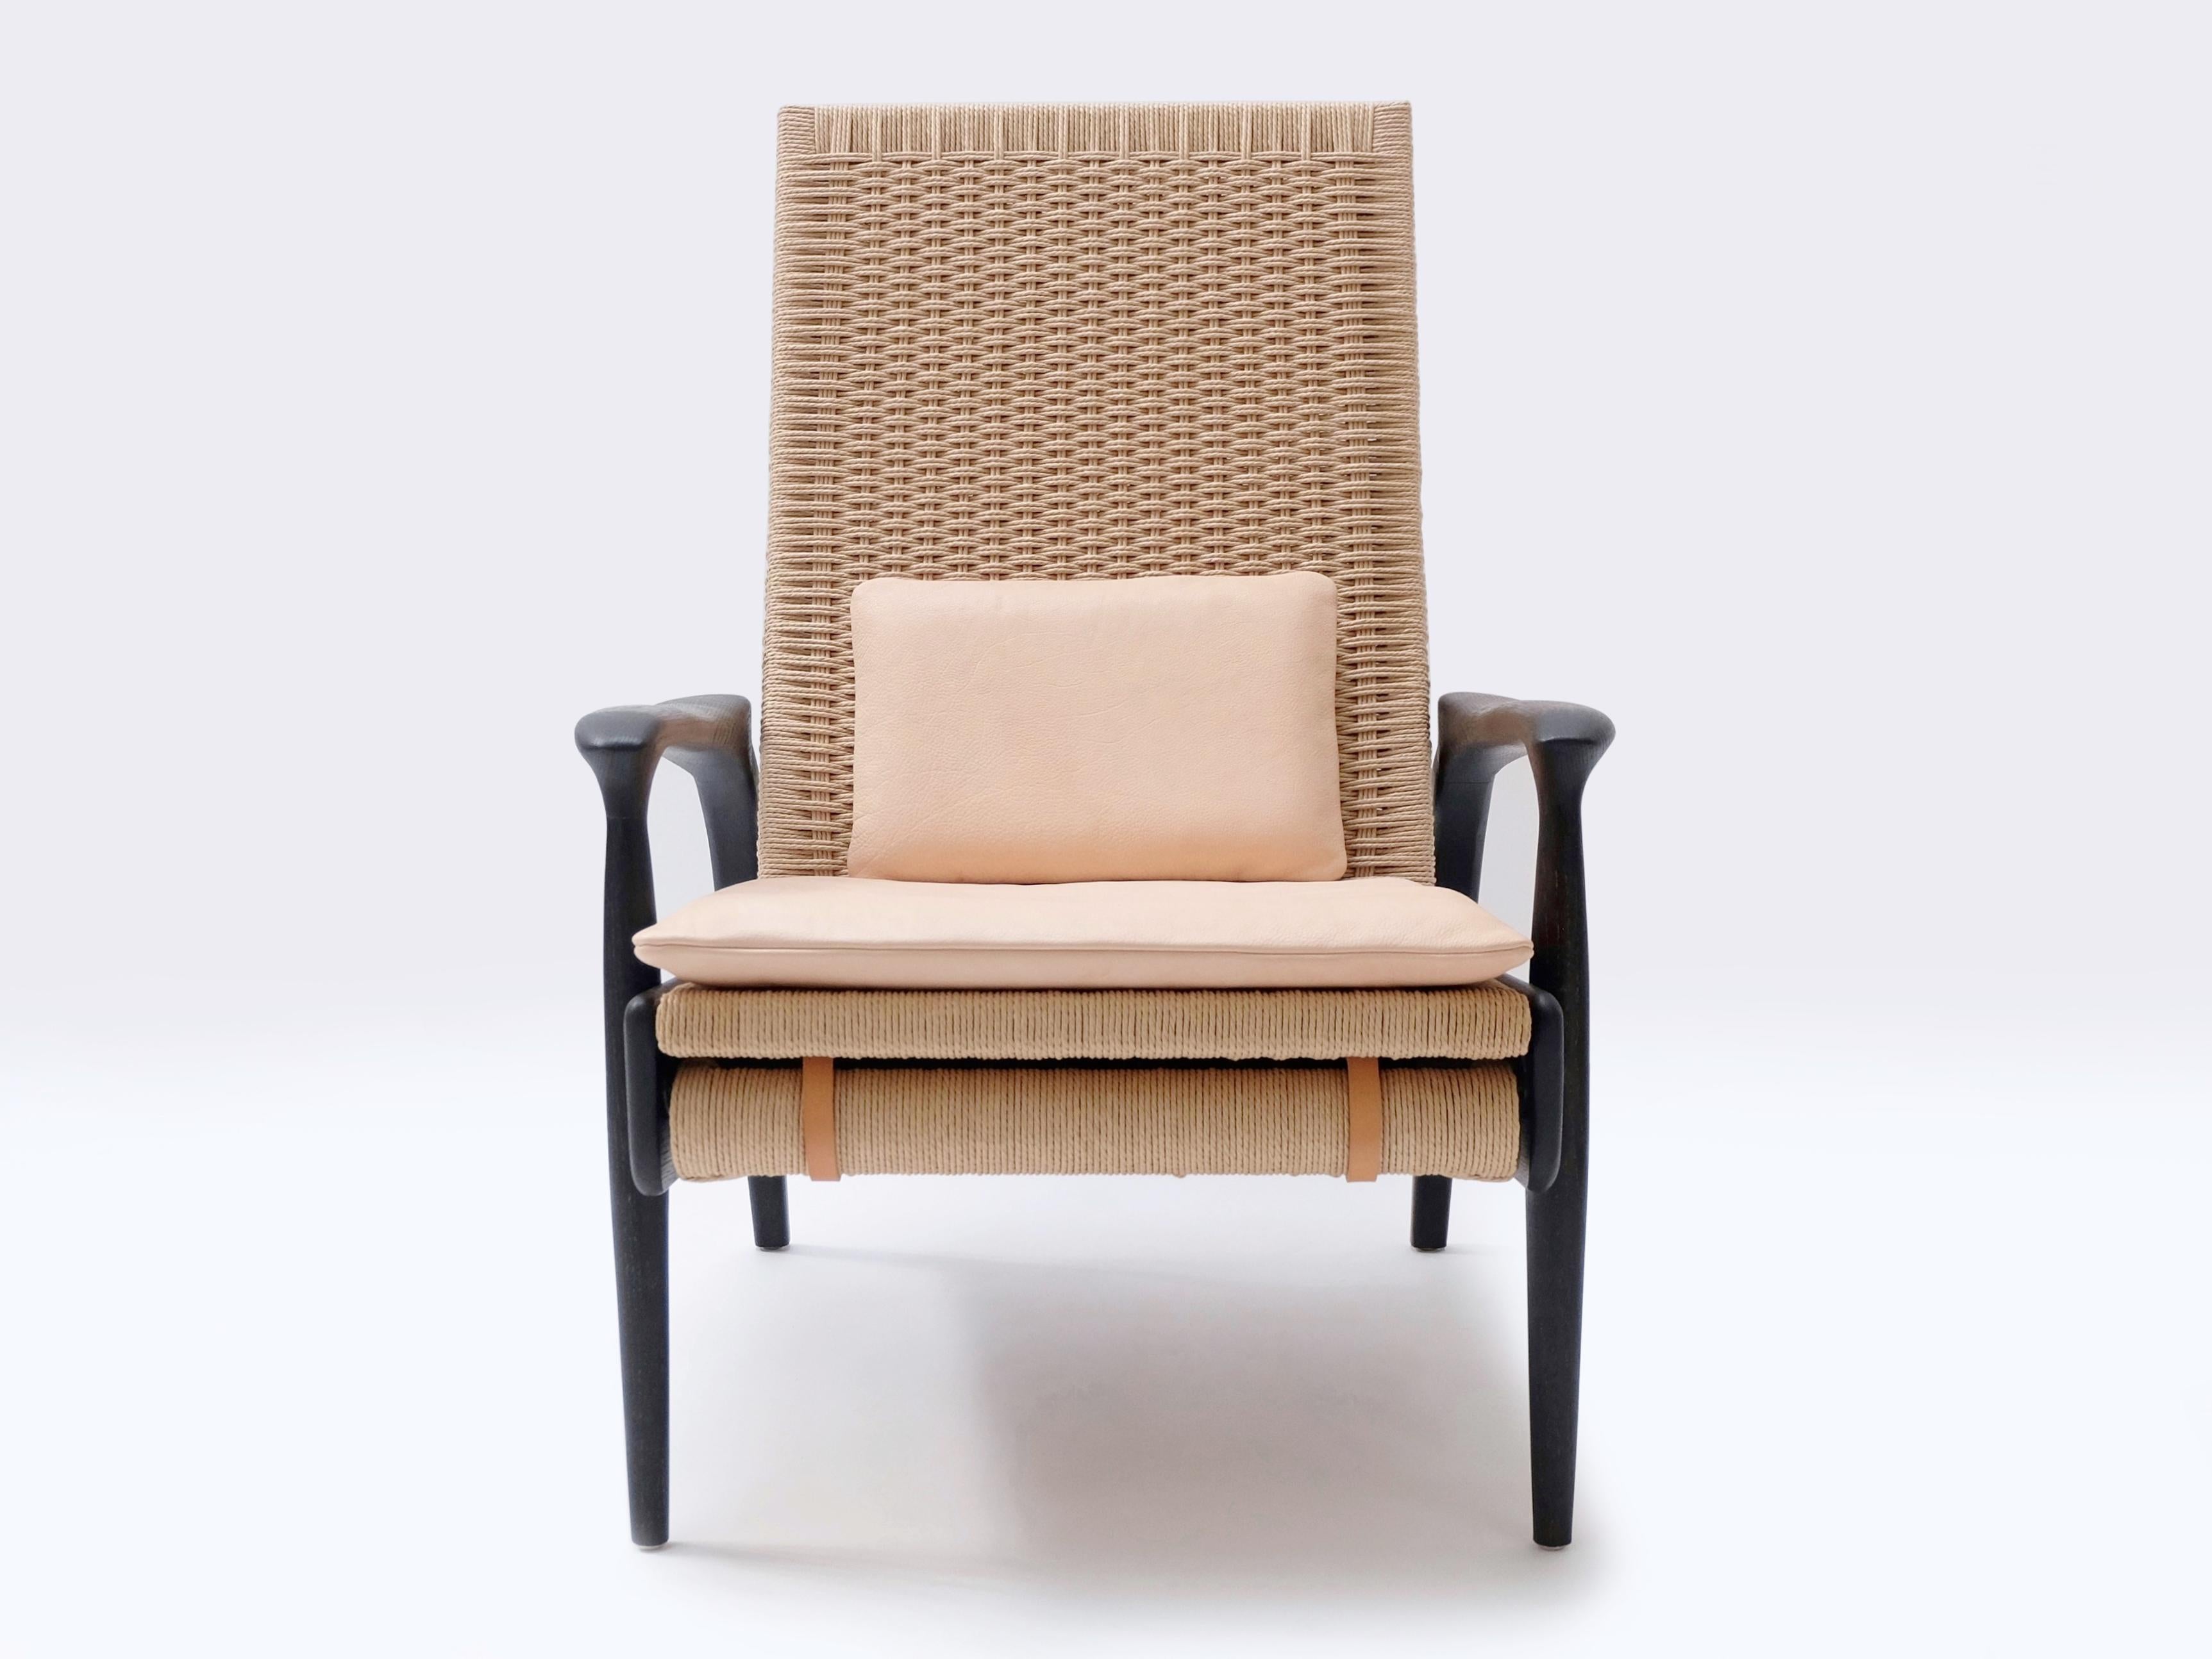 Ein Paar handgefertigte Eco-Lounge-Sessel FENDRIK von Studio180degree
Abgebildet in nachhaltiger, massiver, geschwärzter Eiche und kontrastierendem, natürlichem dänischem Cord

Edel - taktil - raffiniert - nachhaltig
Reclining Eco Lounge Chair